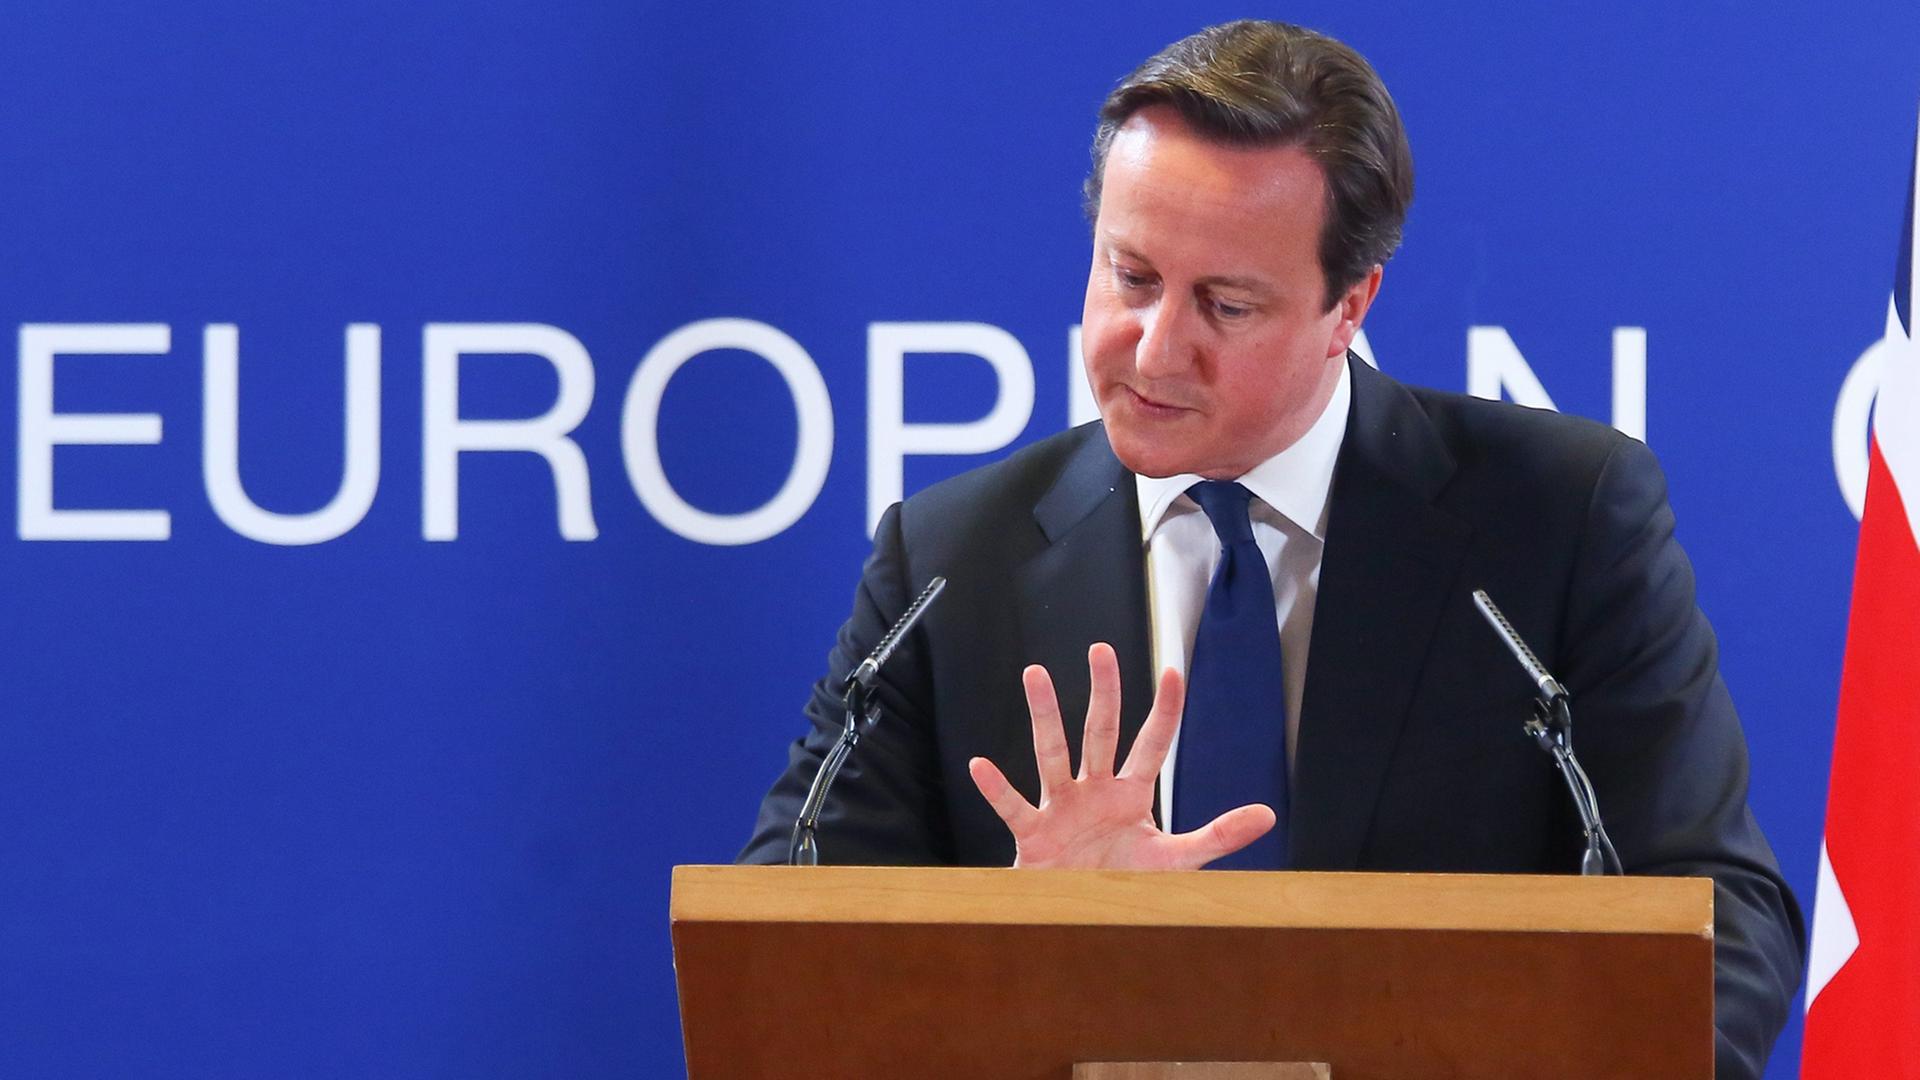 David Cameron gestikuliert am Rednerpult bei einem Auftritt in Brüssel